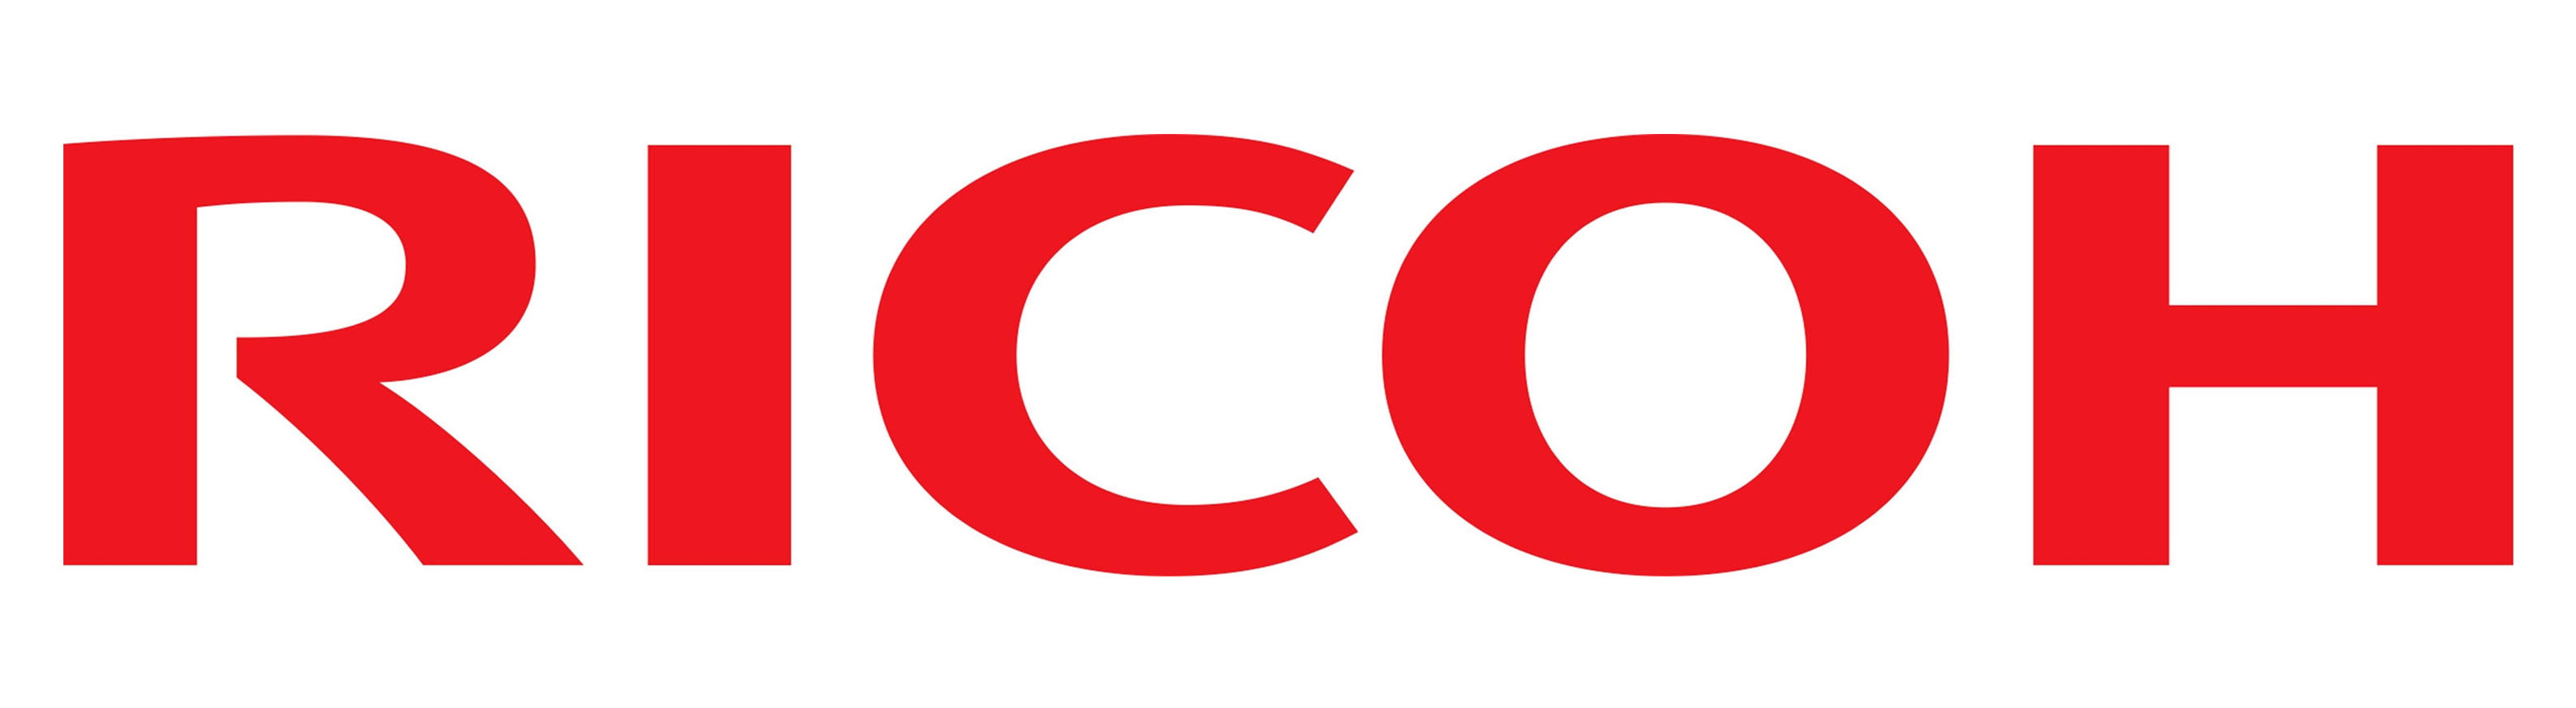 Ricoh Logo Wallpaper